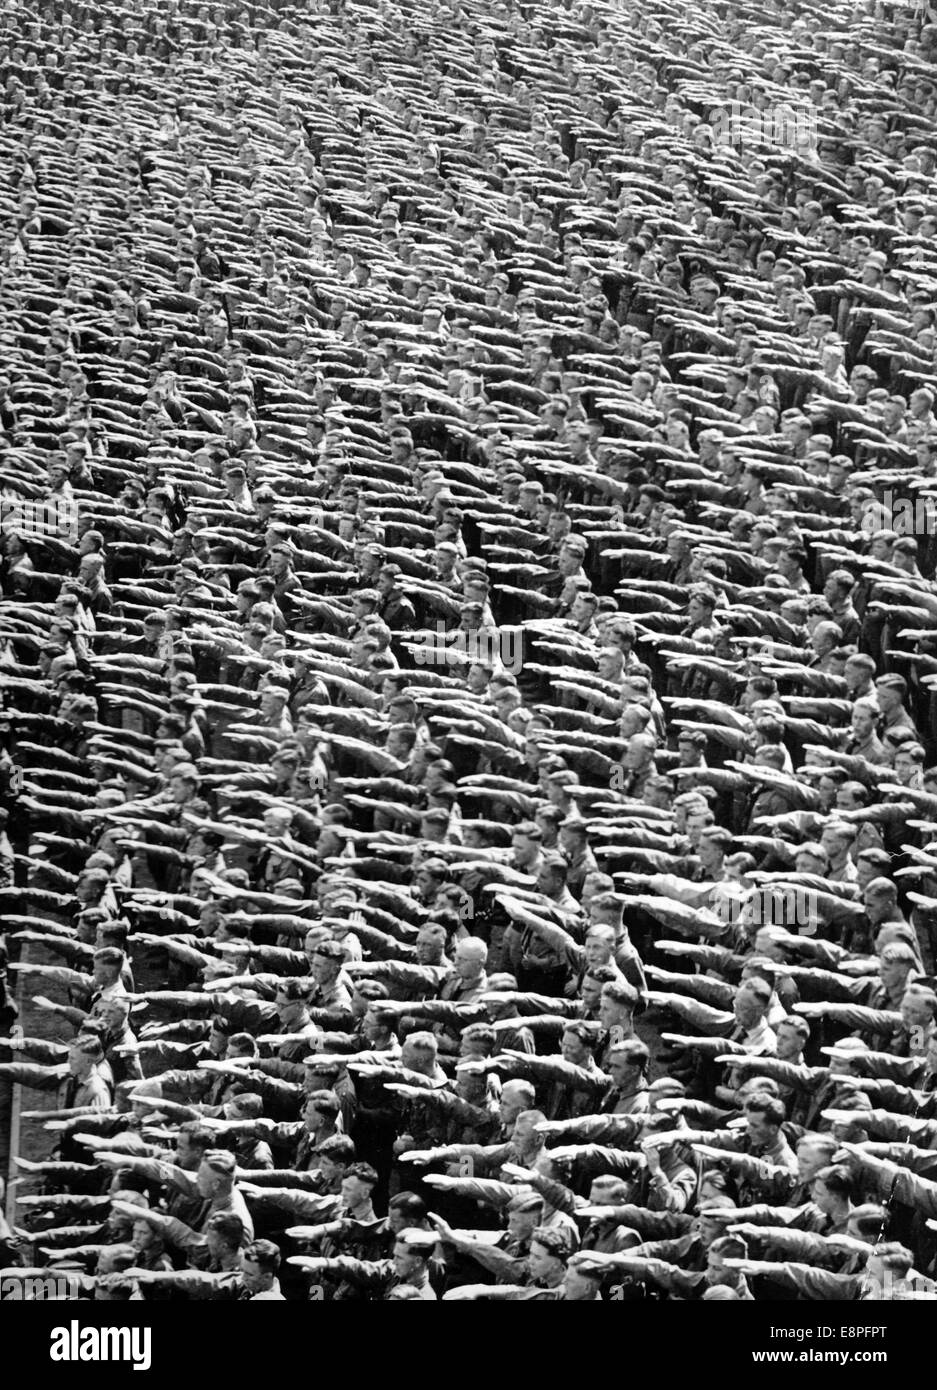 Norimberga Rally 1935 a Norimberga, Germania - i membri della Hitler Youth (HJ) eseguono il saluto nazista presso i raduni del partito nazista. (Difetti di qualità dovuti alla copia storica dell'immagine) Fotoarchiv für Zeitgeschichtee - NESSUN SERVIZIO DI CABLAGGIO - Foto Stock